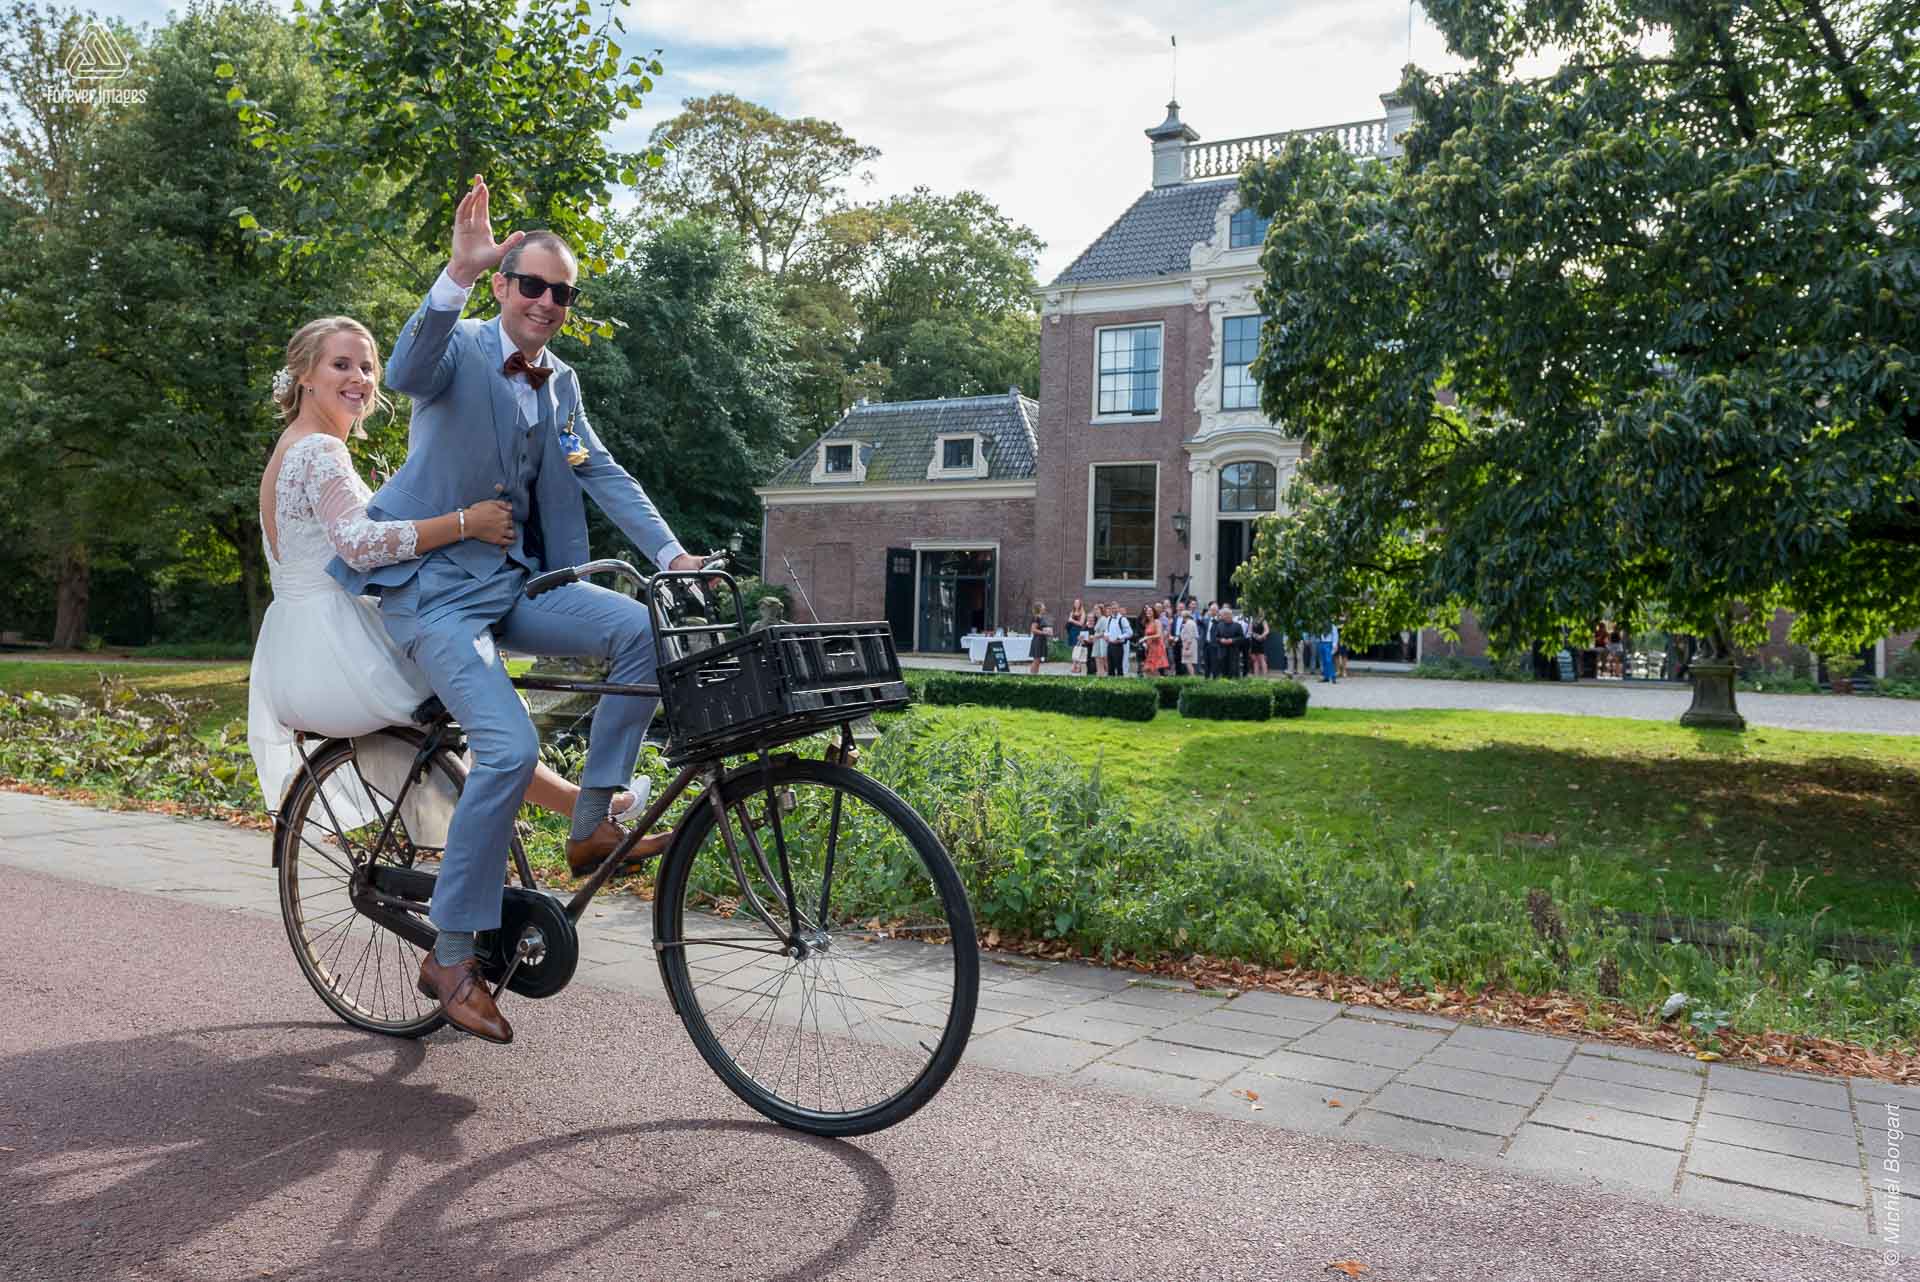 Bruidsfoto bruidspaar op de fiets onderweg naar het feest | Bart Eefje Mijland | Bruidsfotograaf Michiel Borgart - Forever Images.